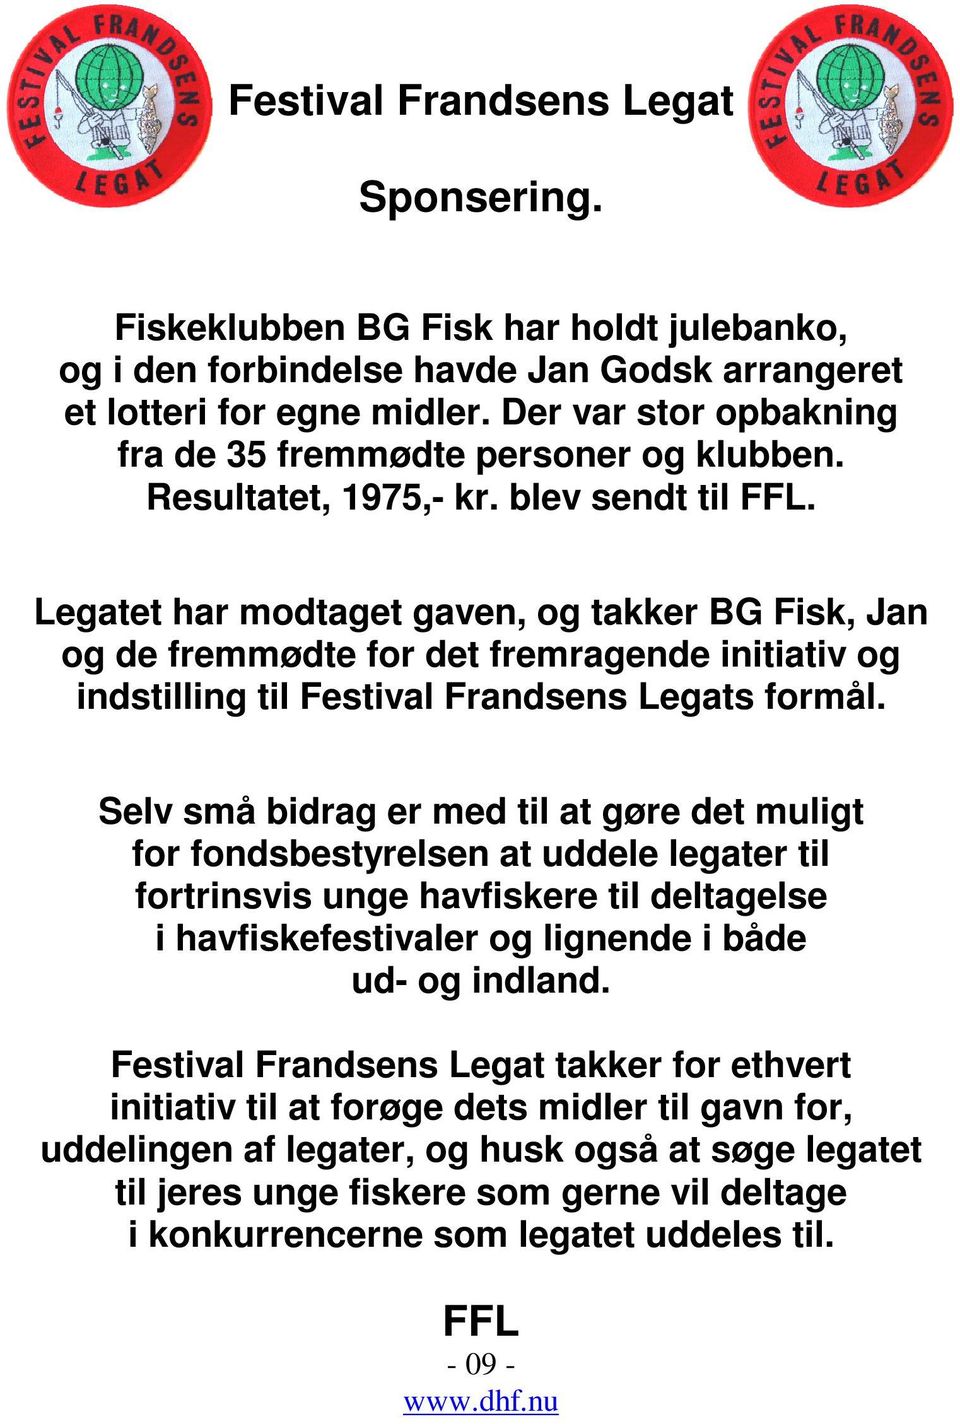 Legatet har modtaget gaven, og takker BG Fisk, Jan og de fremmødte for det fremragende initiativ og indstilling til Festival Frandsens Legats formål.